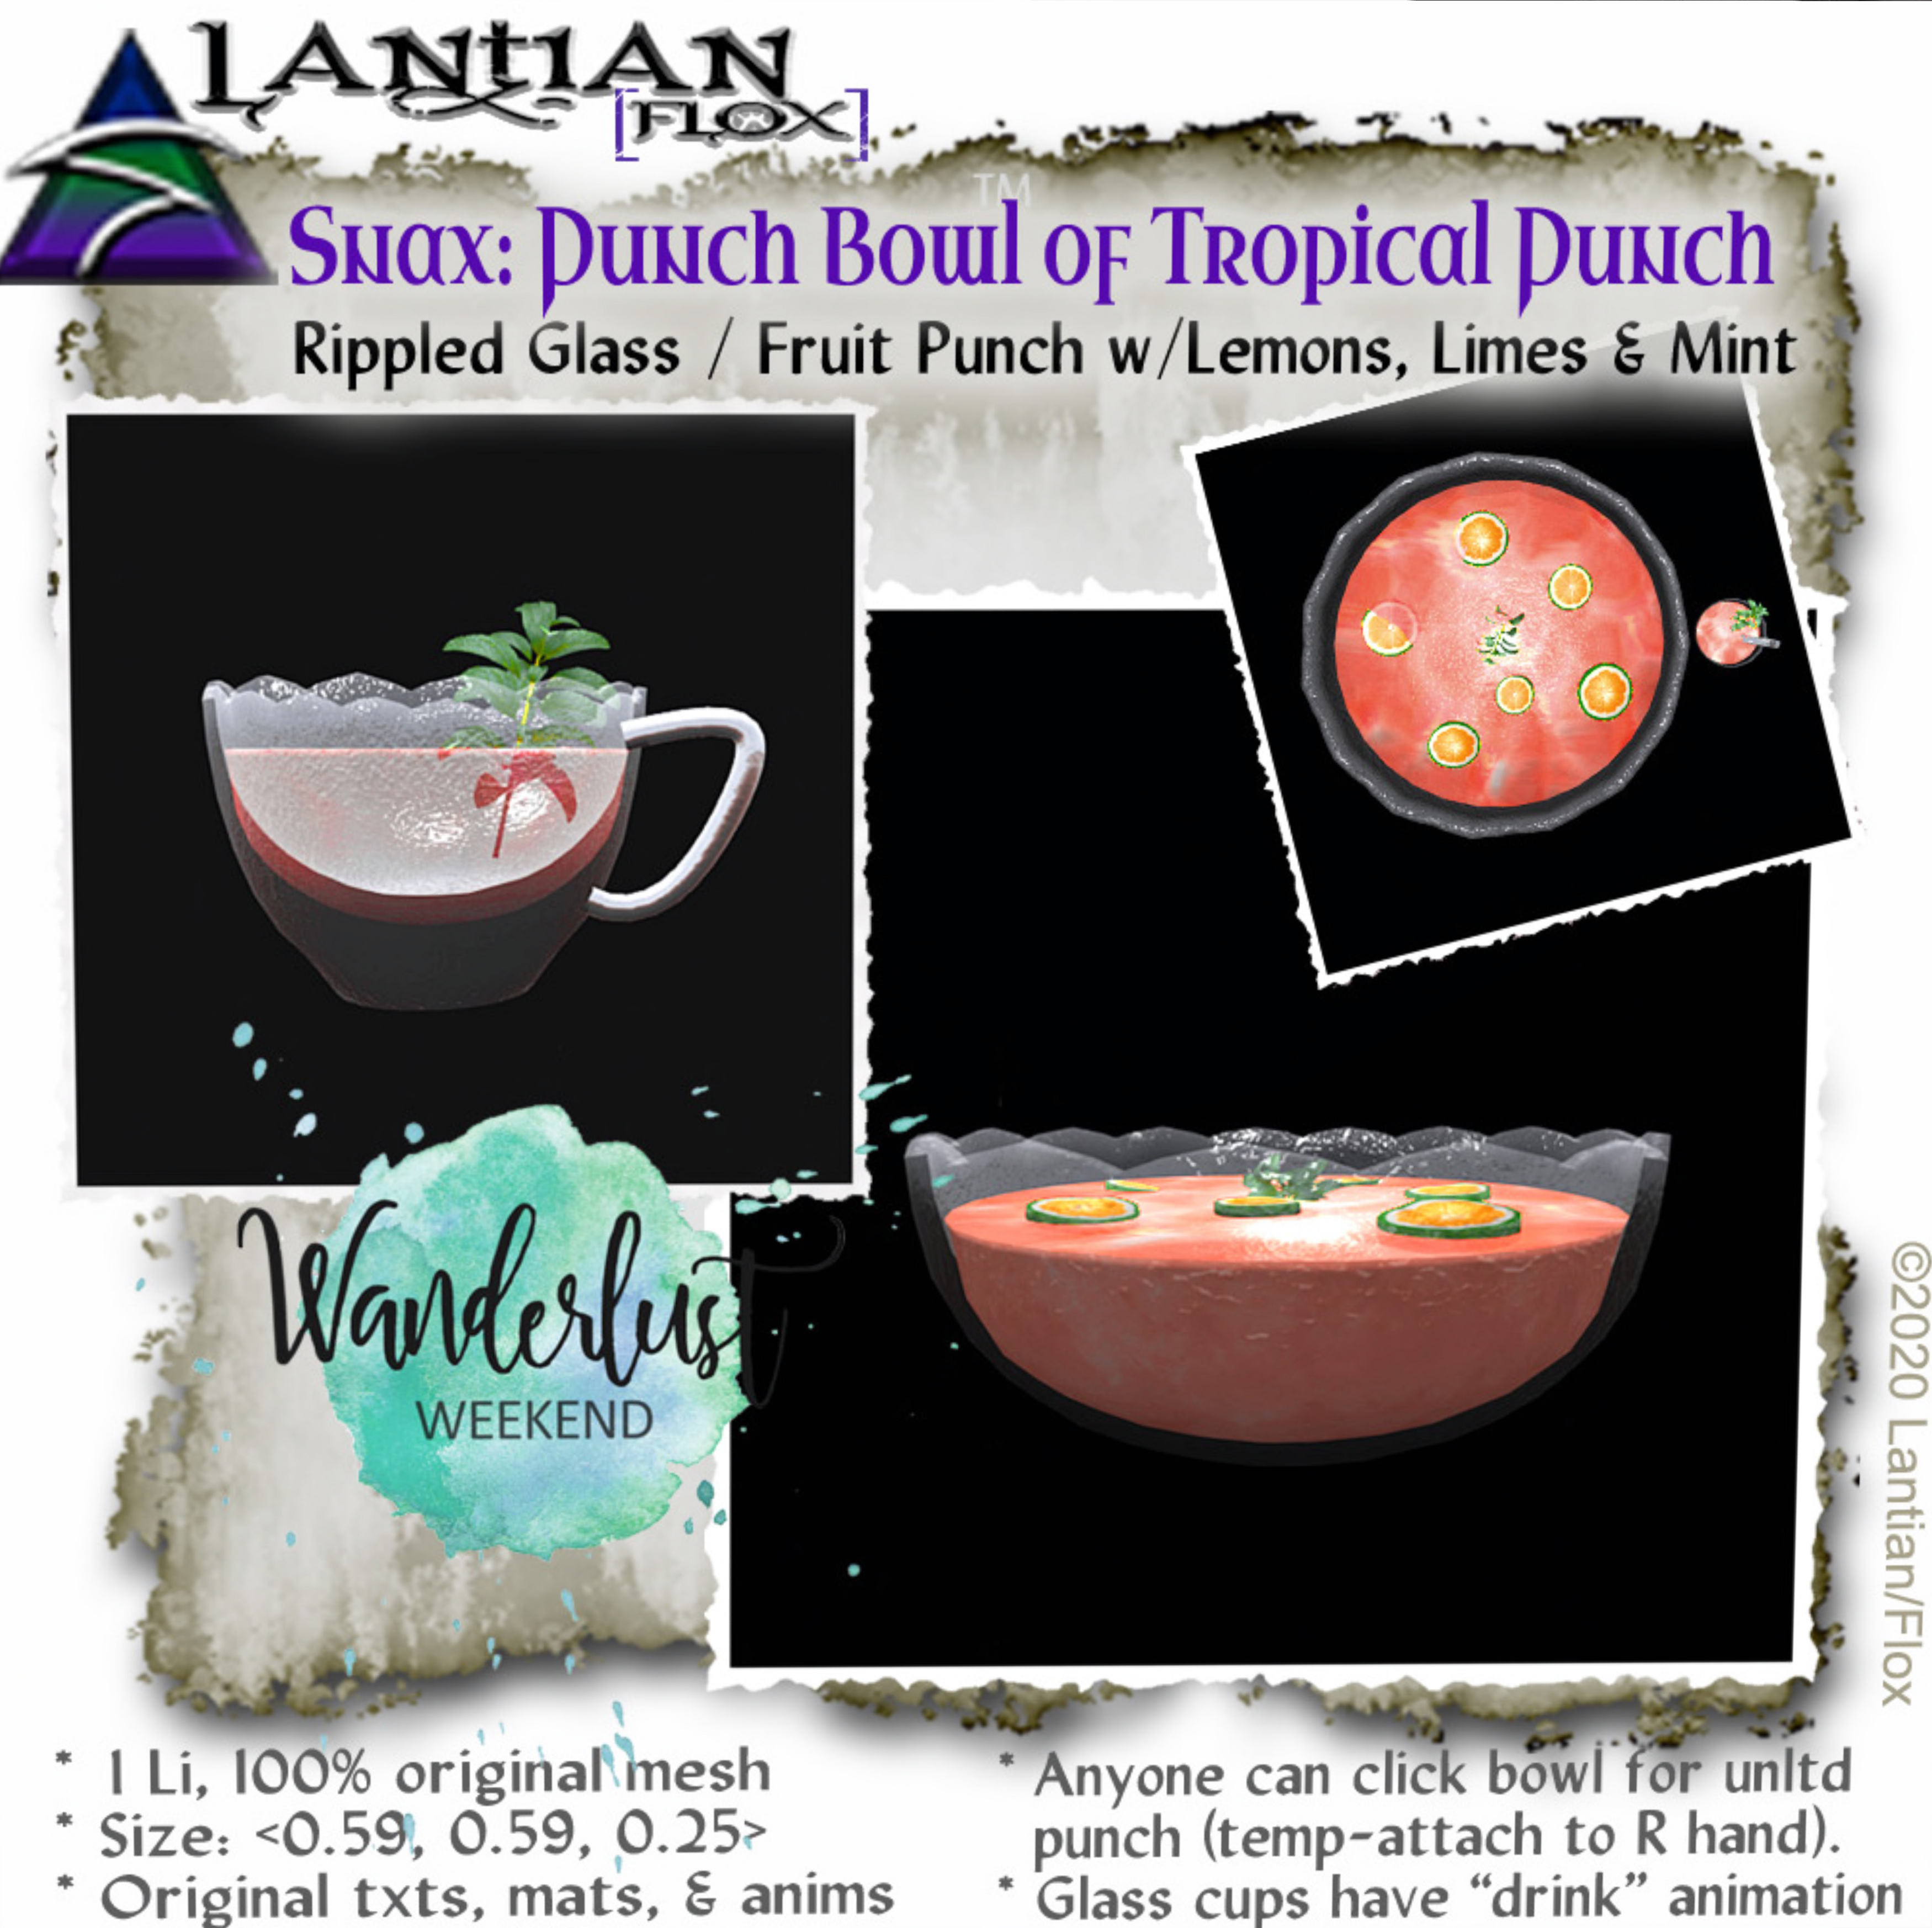 Lantian/Flox – Bowl of Punch